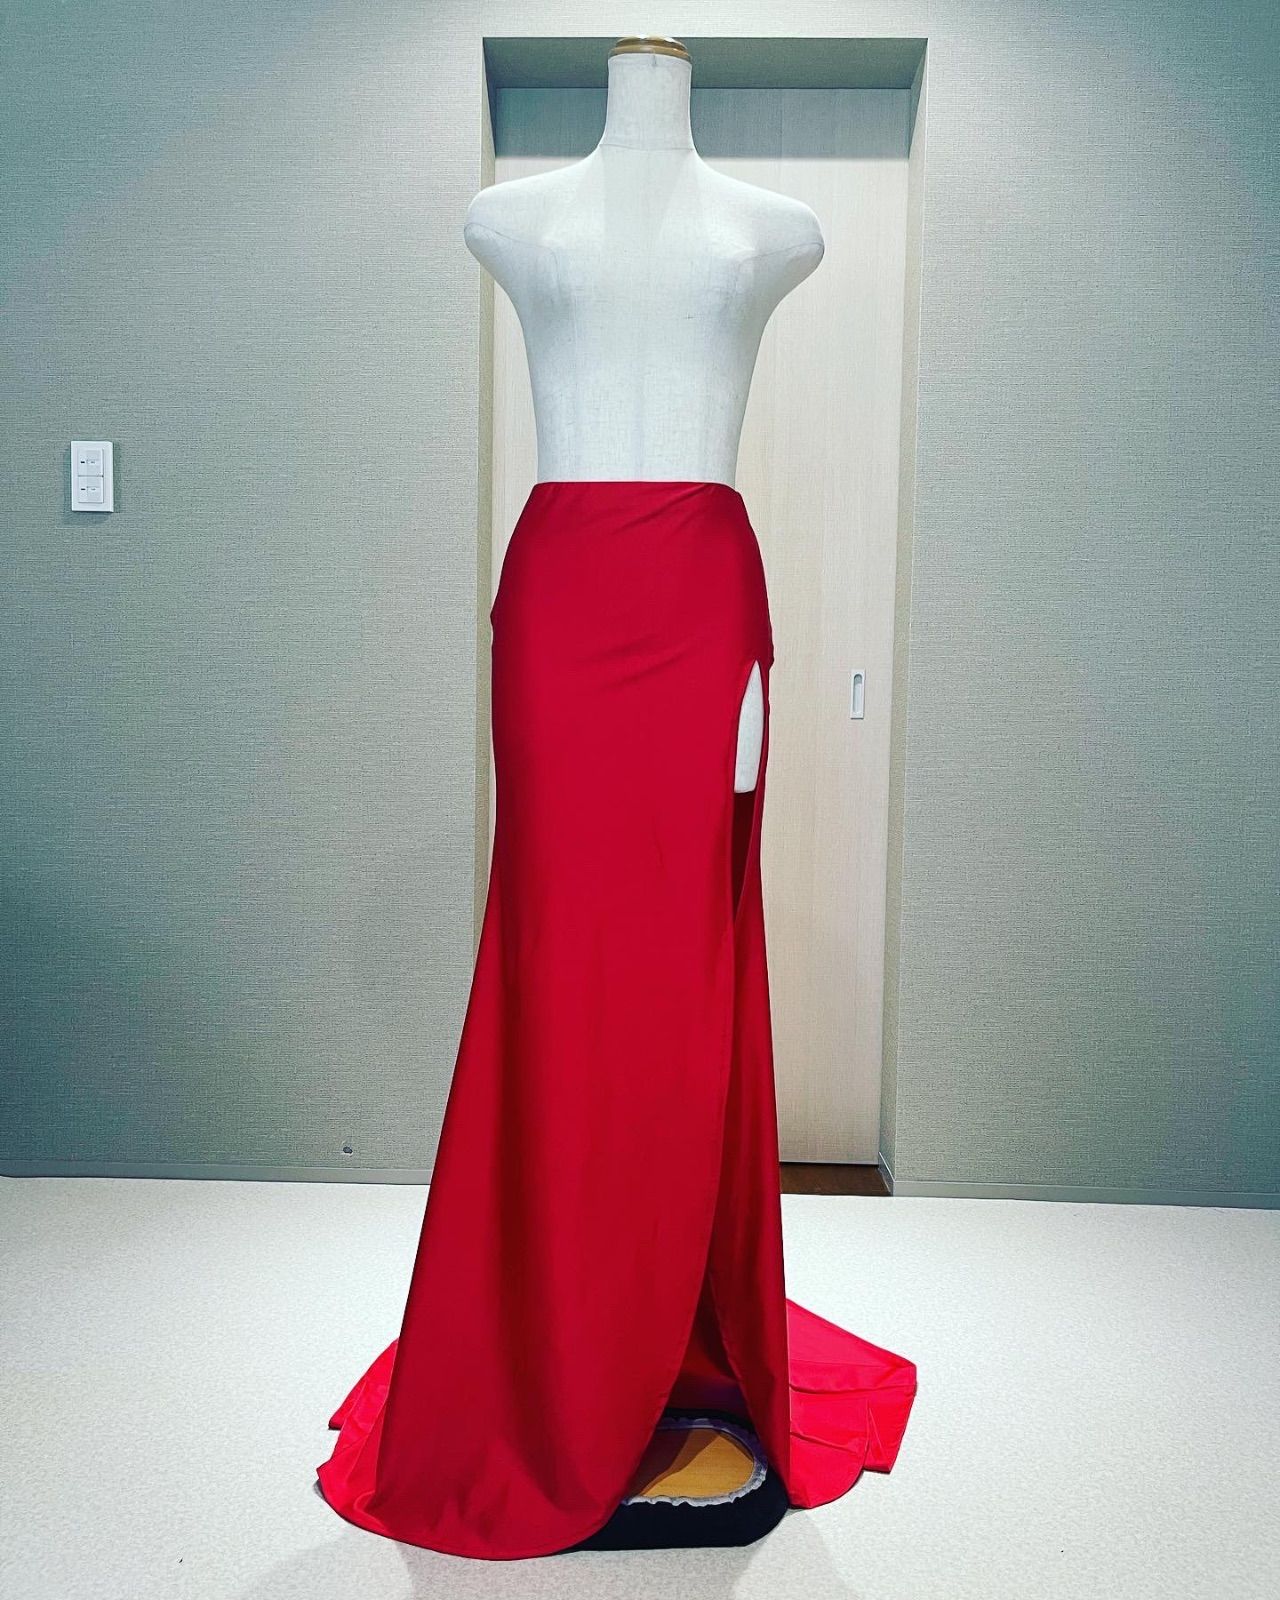 jbbf フィットモデル ドレス ポージングウォーキング練習用スカート赤1